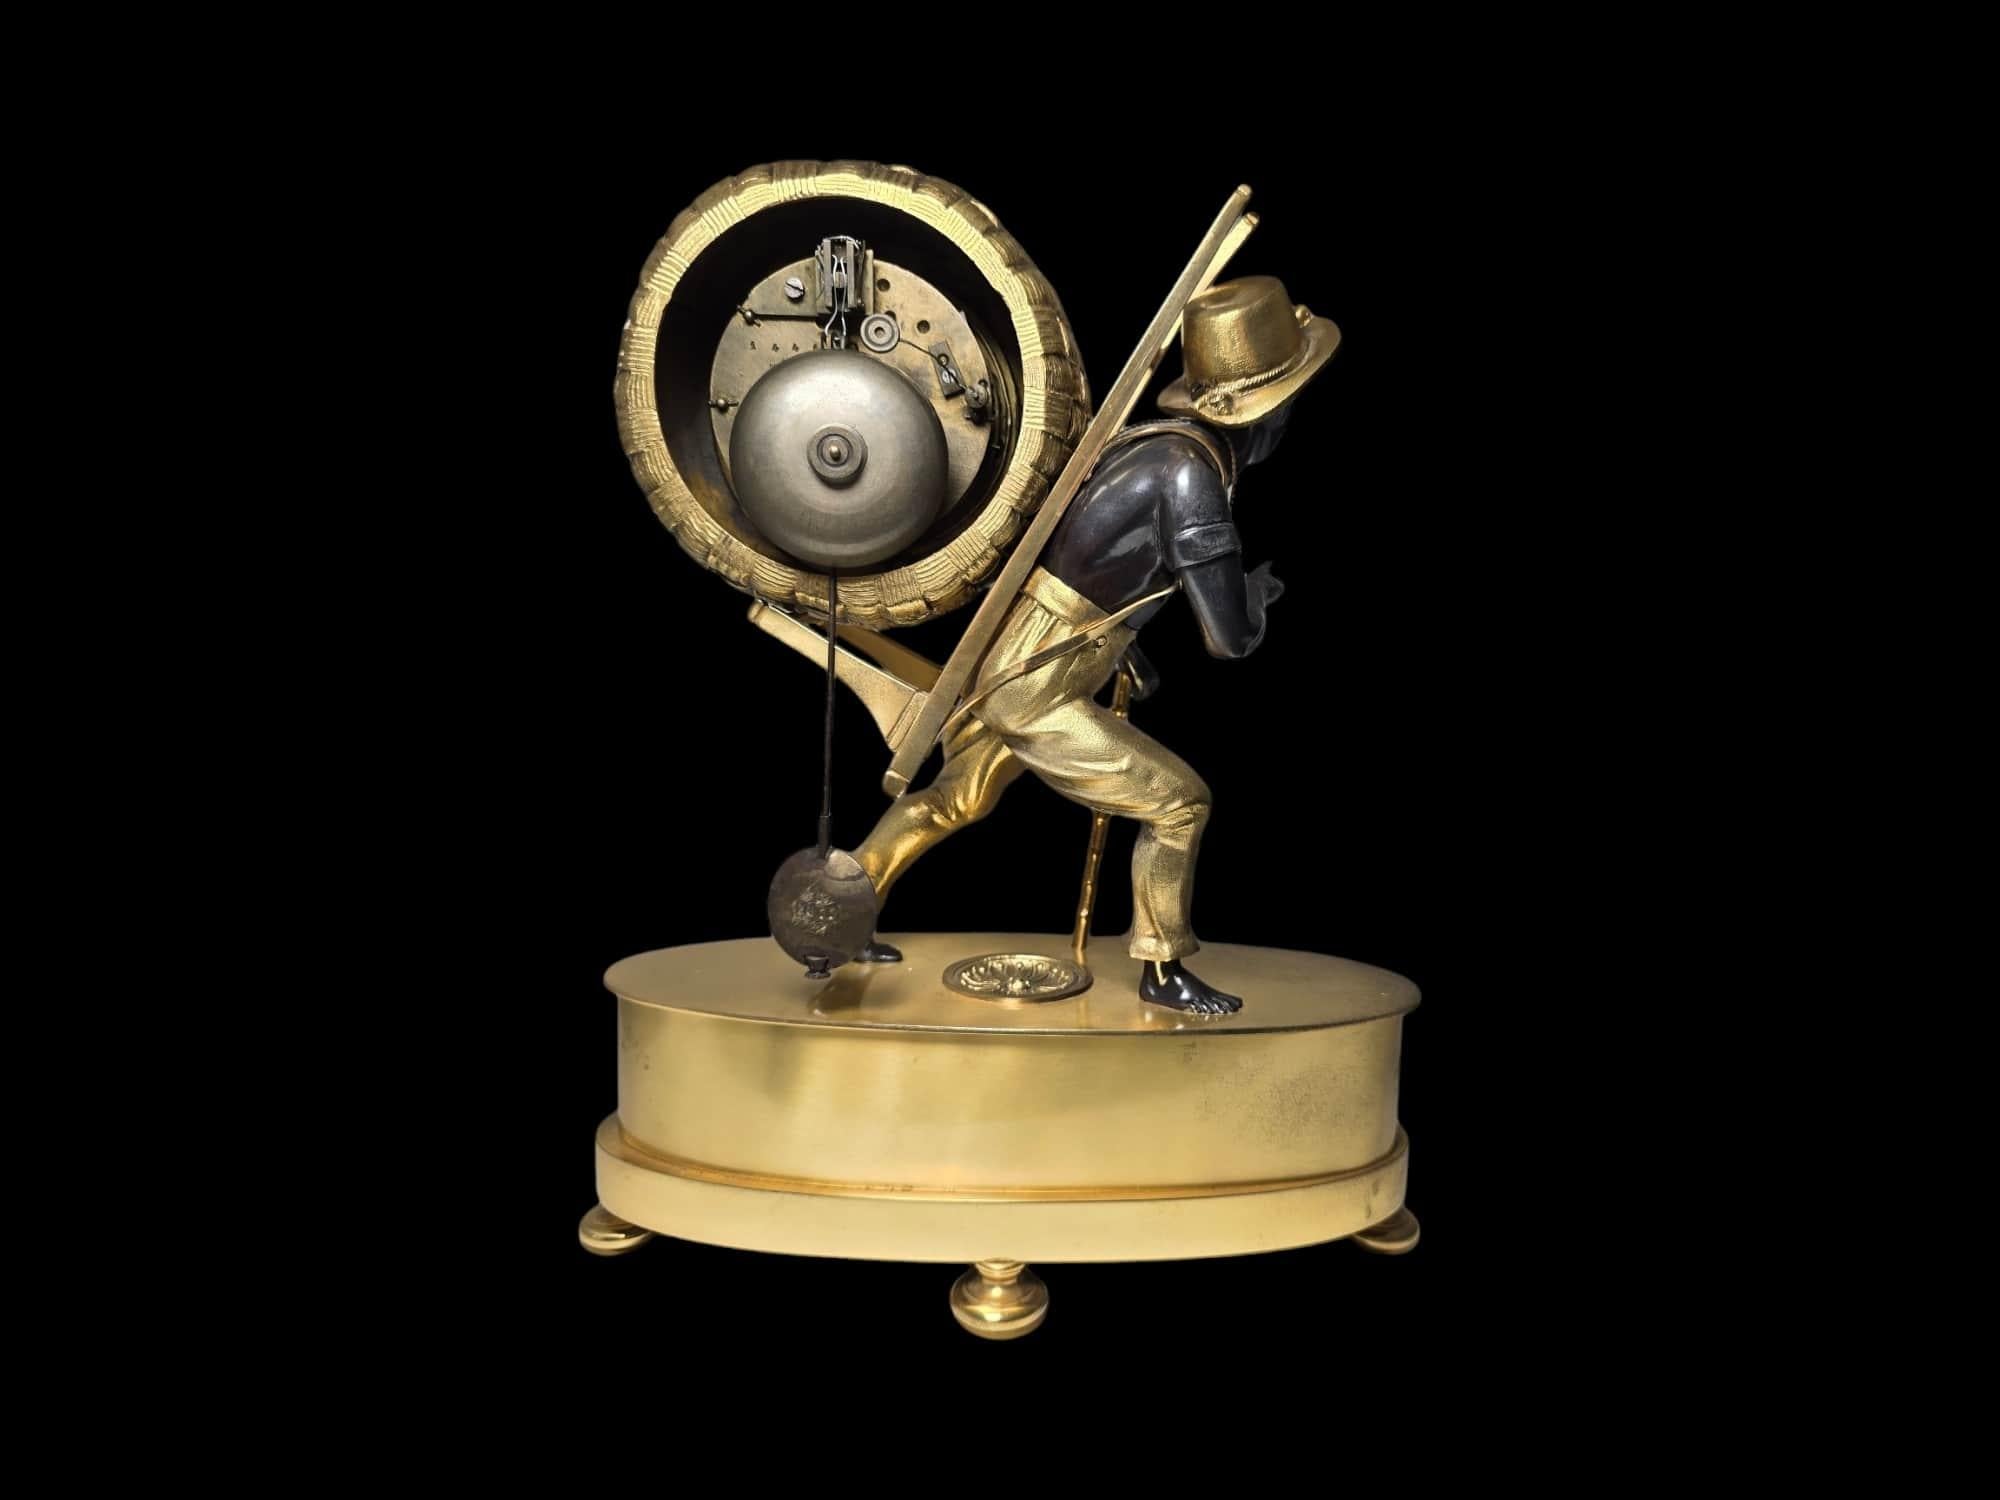 Tiffany&Co Mantel Clock “Le Portefaix” After Design By Jean-André Reiche For Sale 6